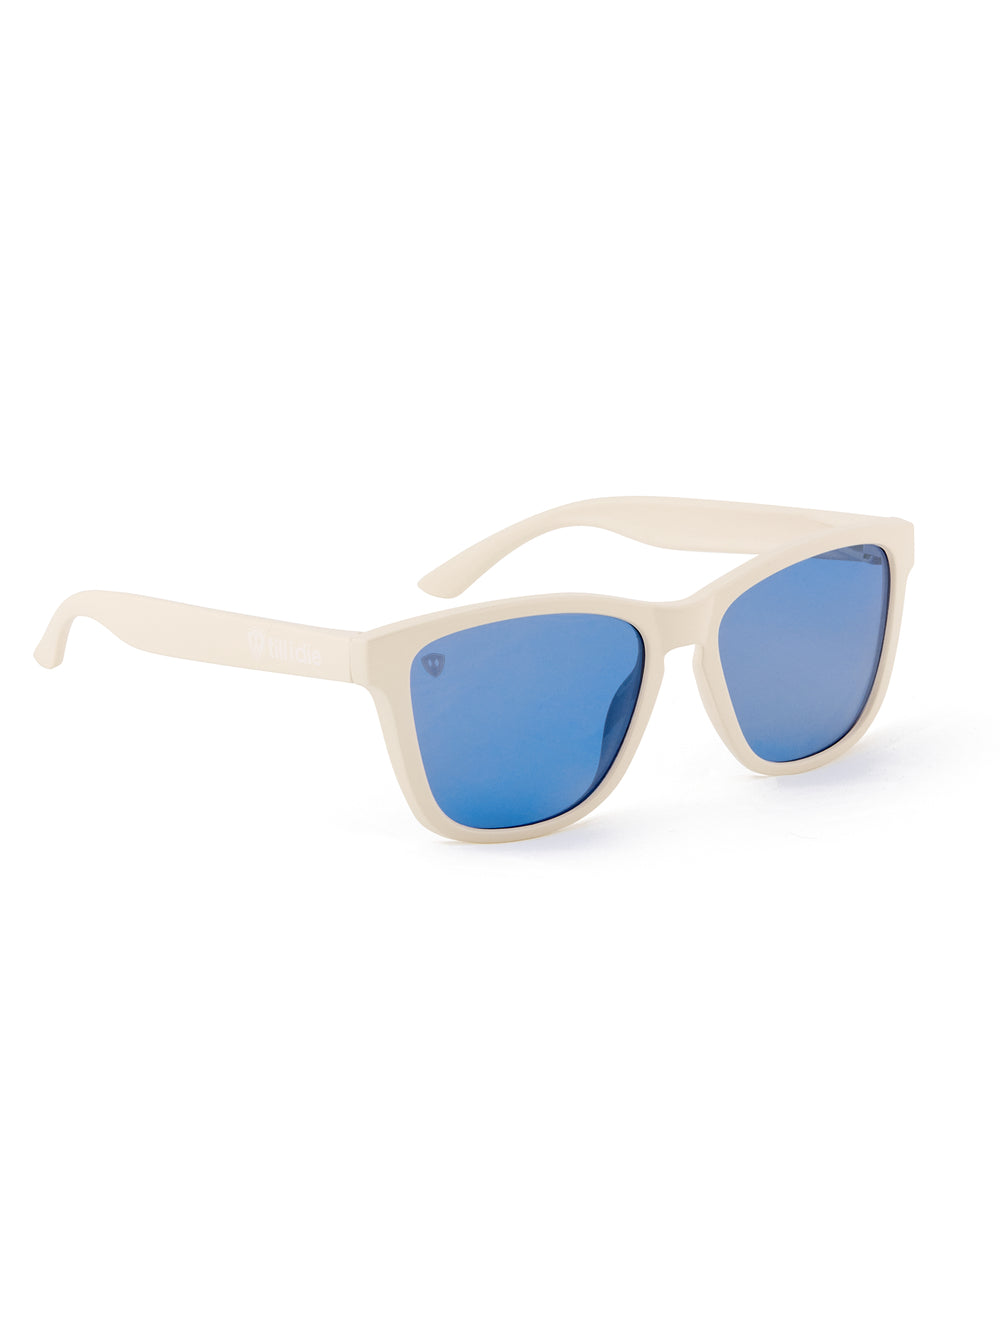 Coastal Cloud // Polarized Sunglasses // Cream + Blue